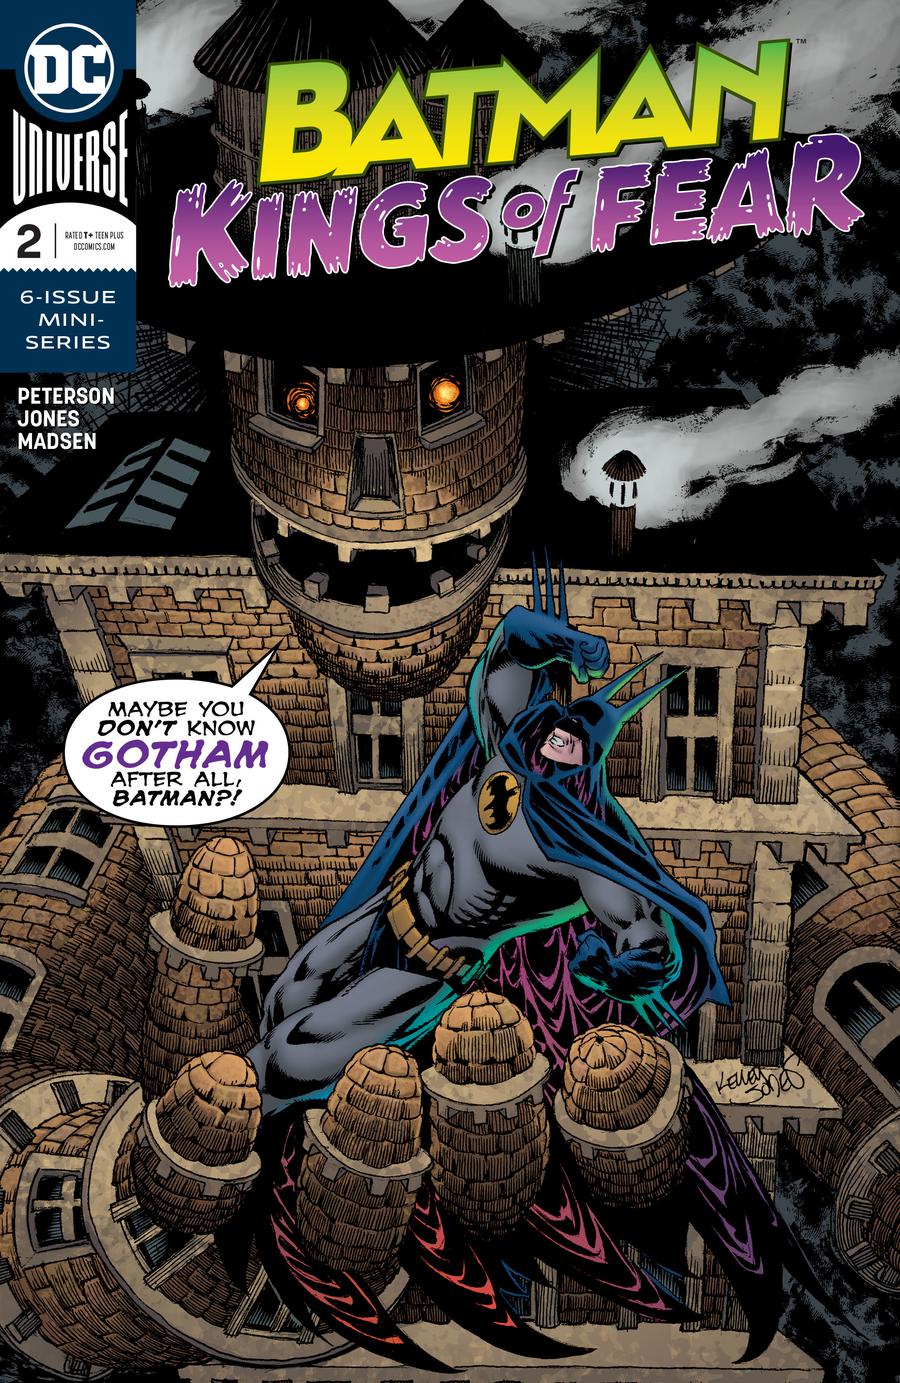 Batman Kings Of Fear #2